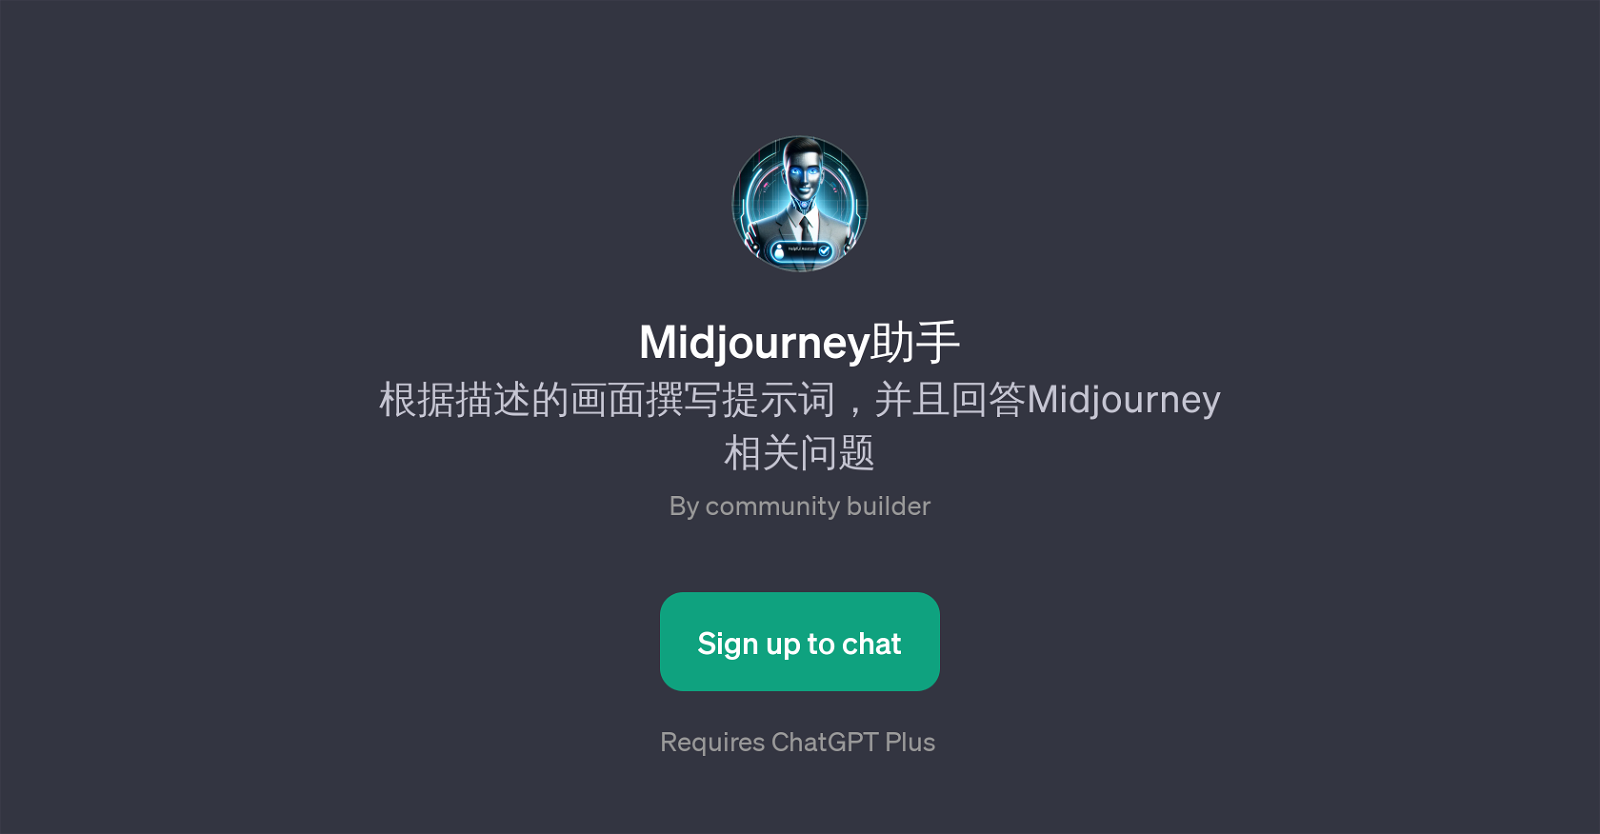 Midjourney website